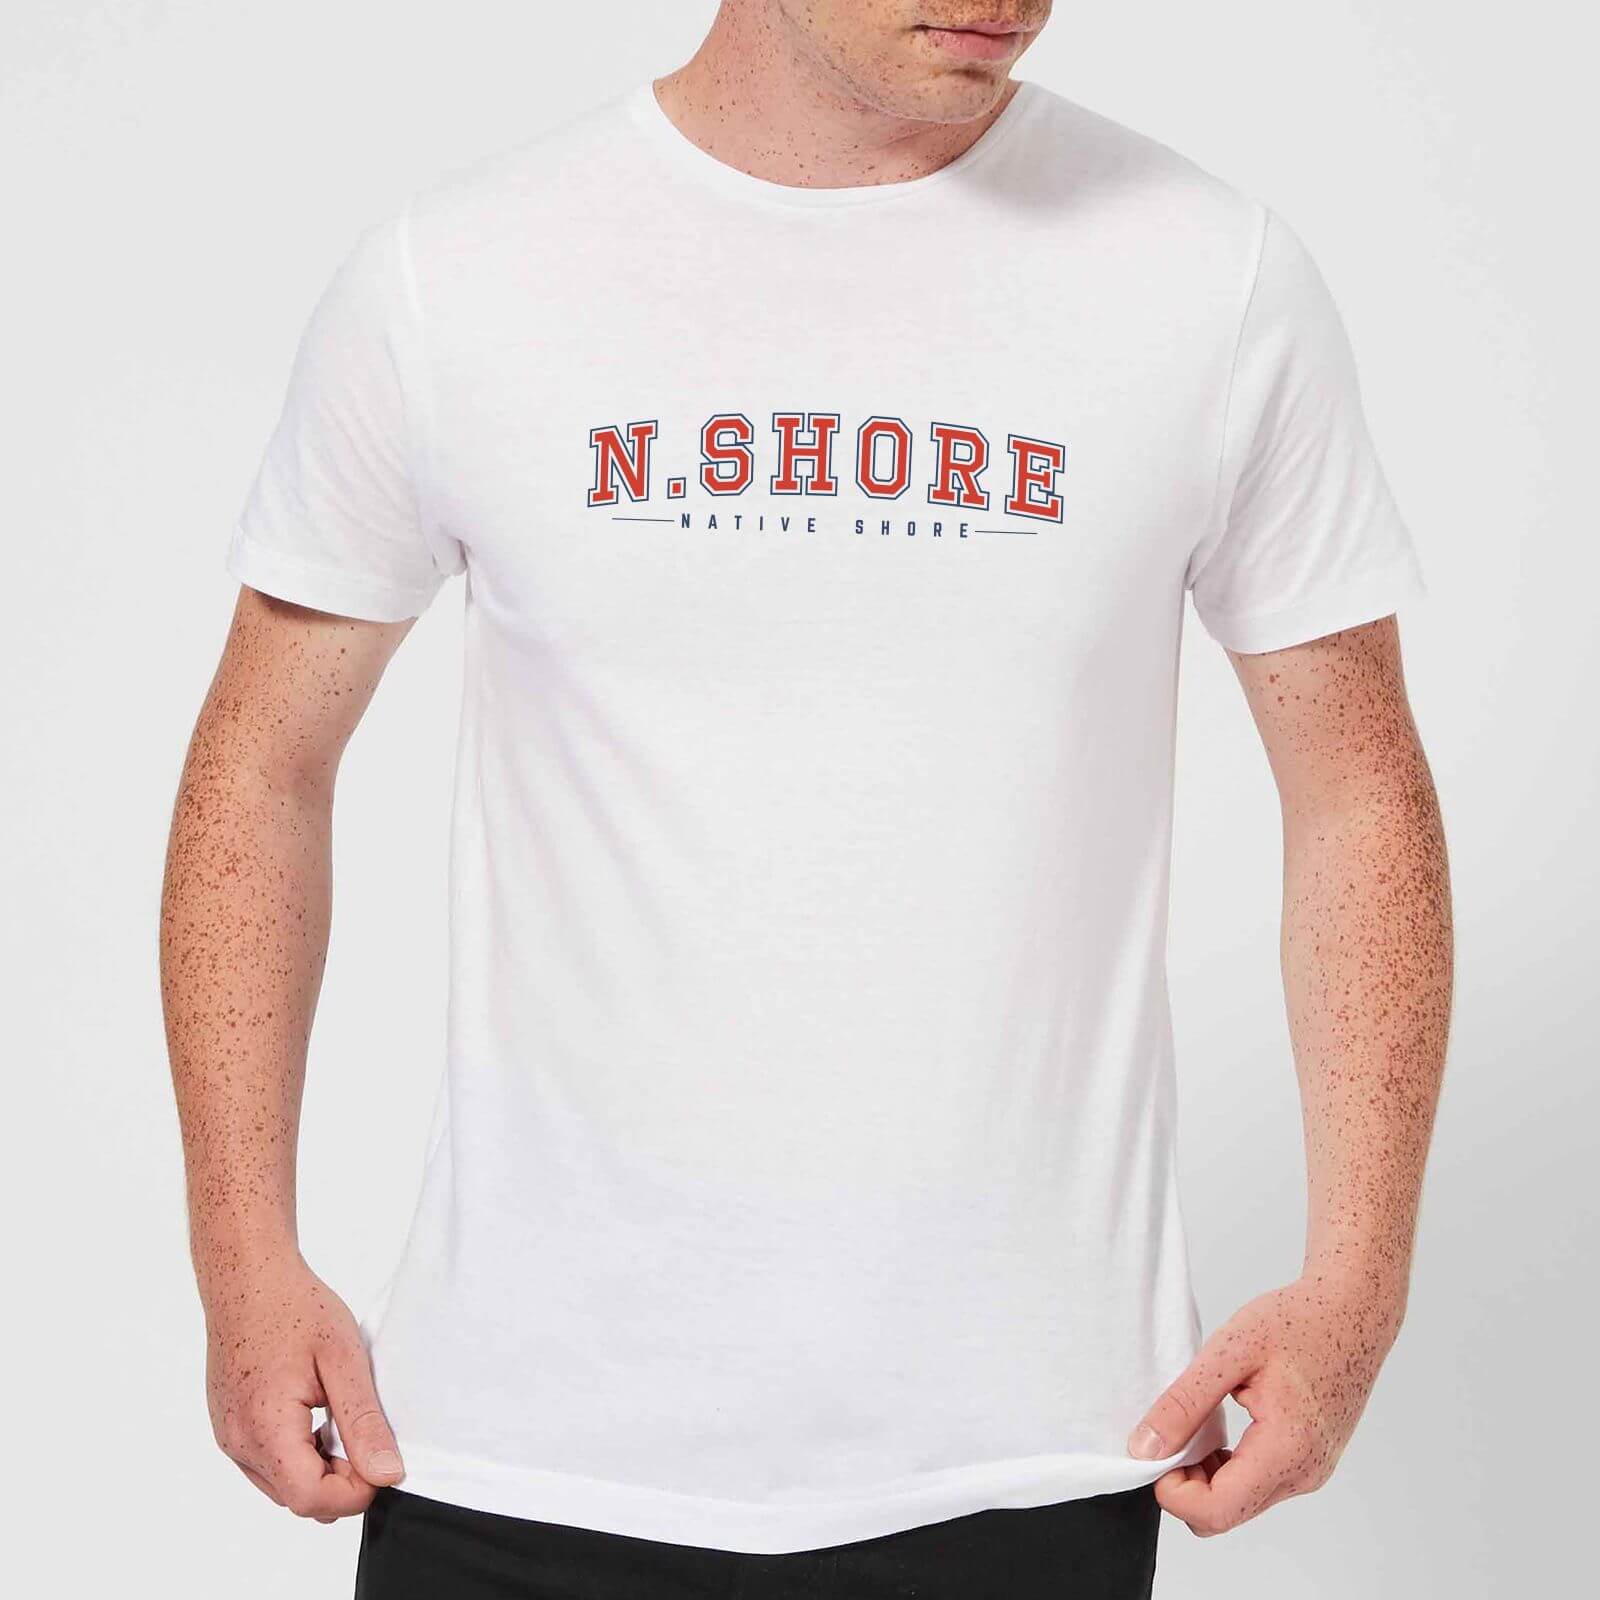 Native Shore N.Shore Men's T-Shirt - White - 3XL - White